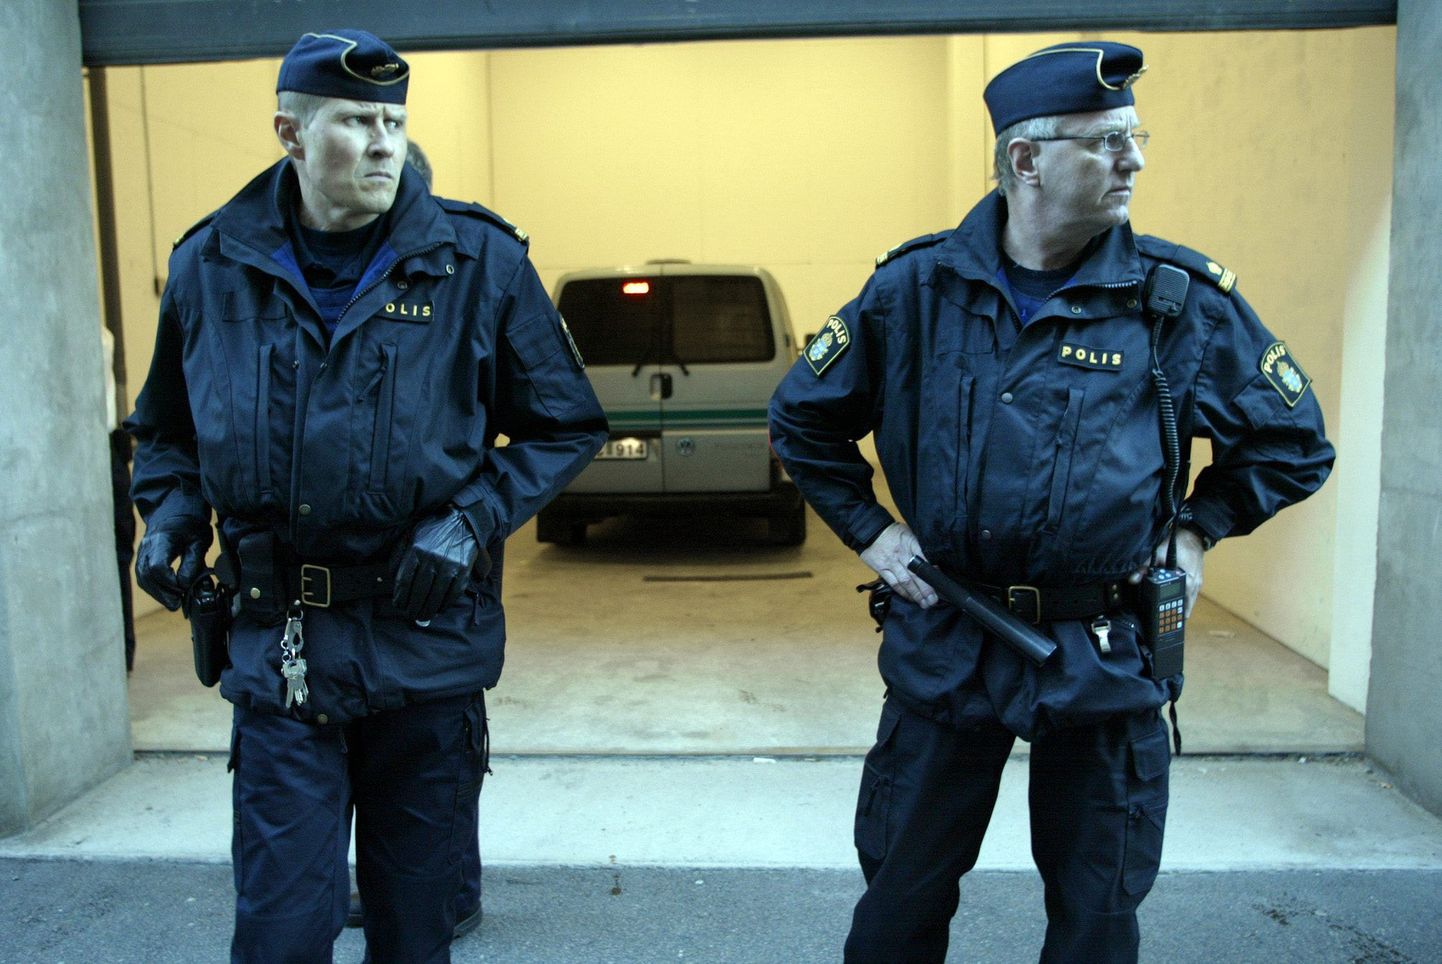 Göteborgis toimunud tulistamises kaotas elu kaks inimest